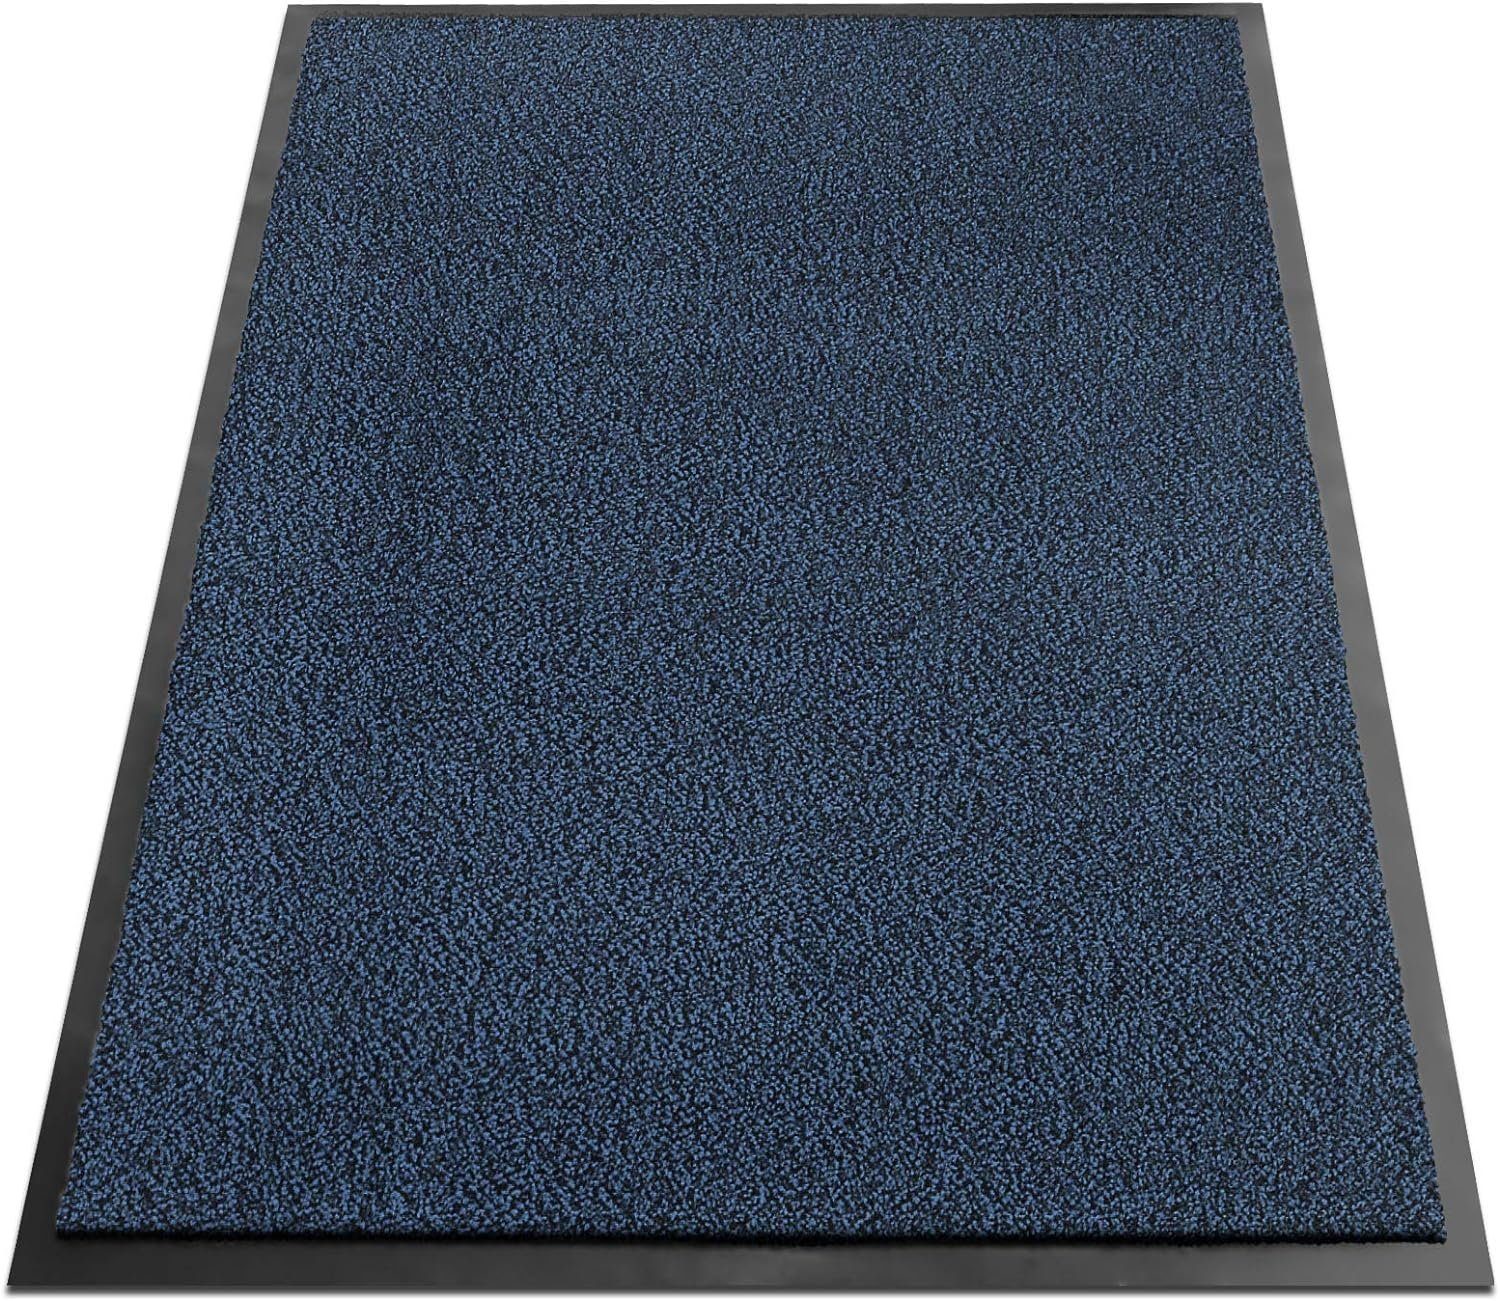 Fußmatte SKY Performa, Erhältlich in vielen Farben & Größen, Eingangsmatte, SKY Schmutzfangmatten, rechteckig, Höhe: 7 mm, Antistatisch